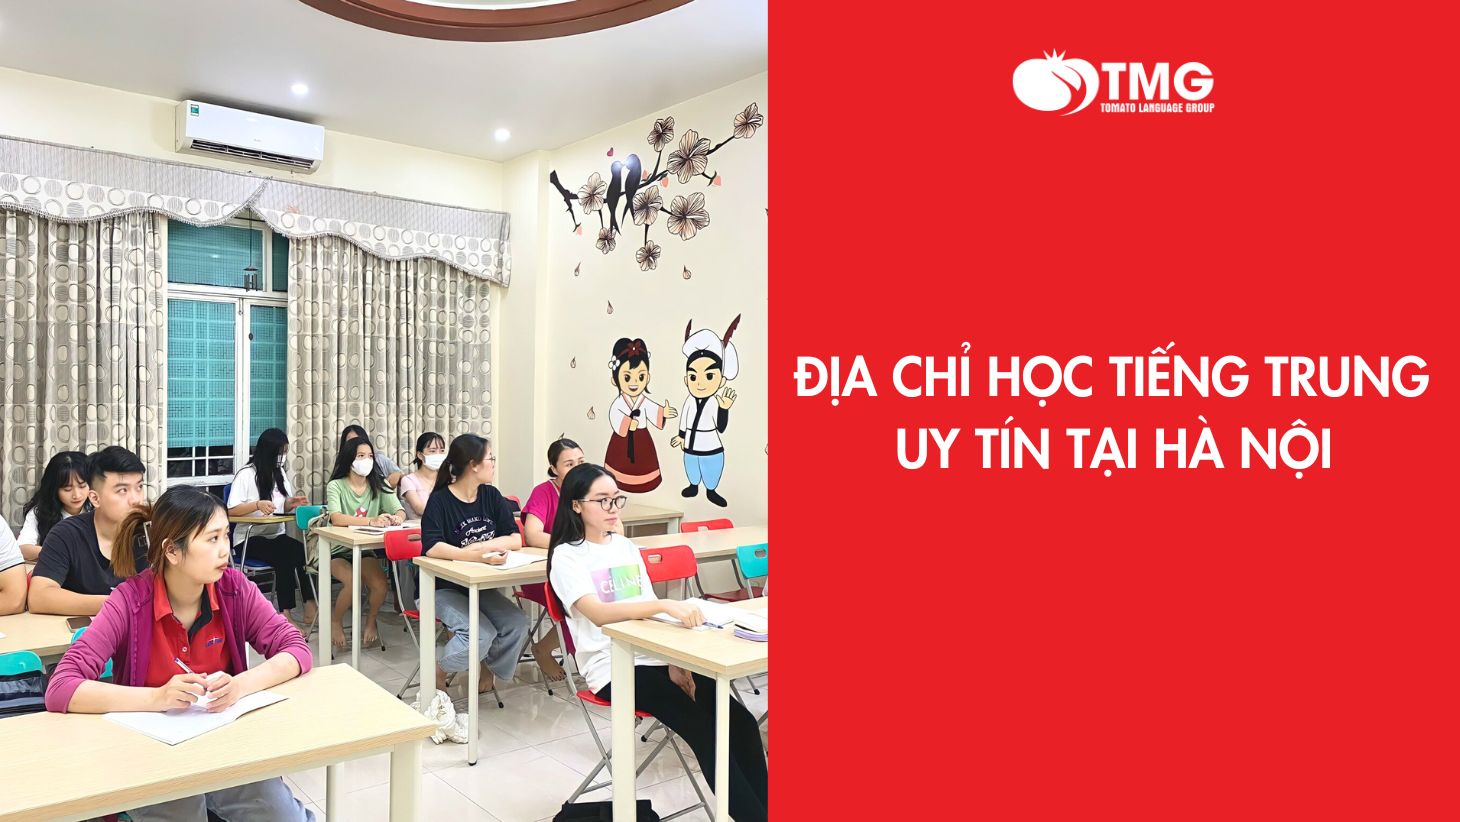 Địa chỉ học tiếng Trung uy tín tại Hà Nội